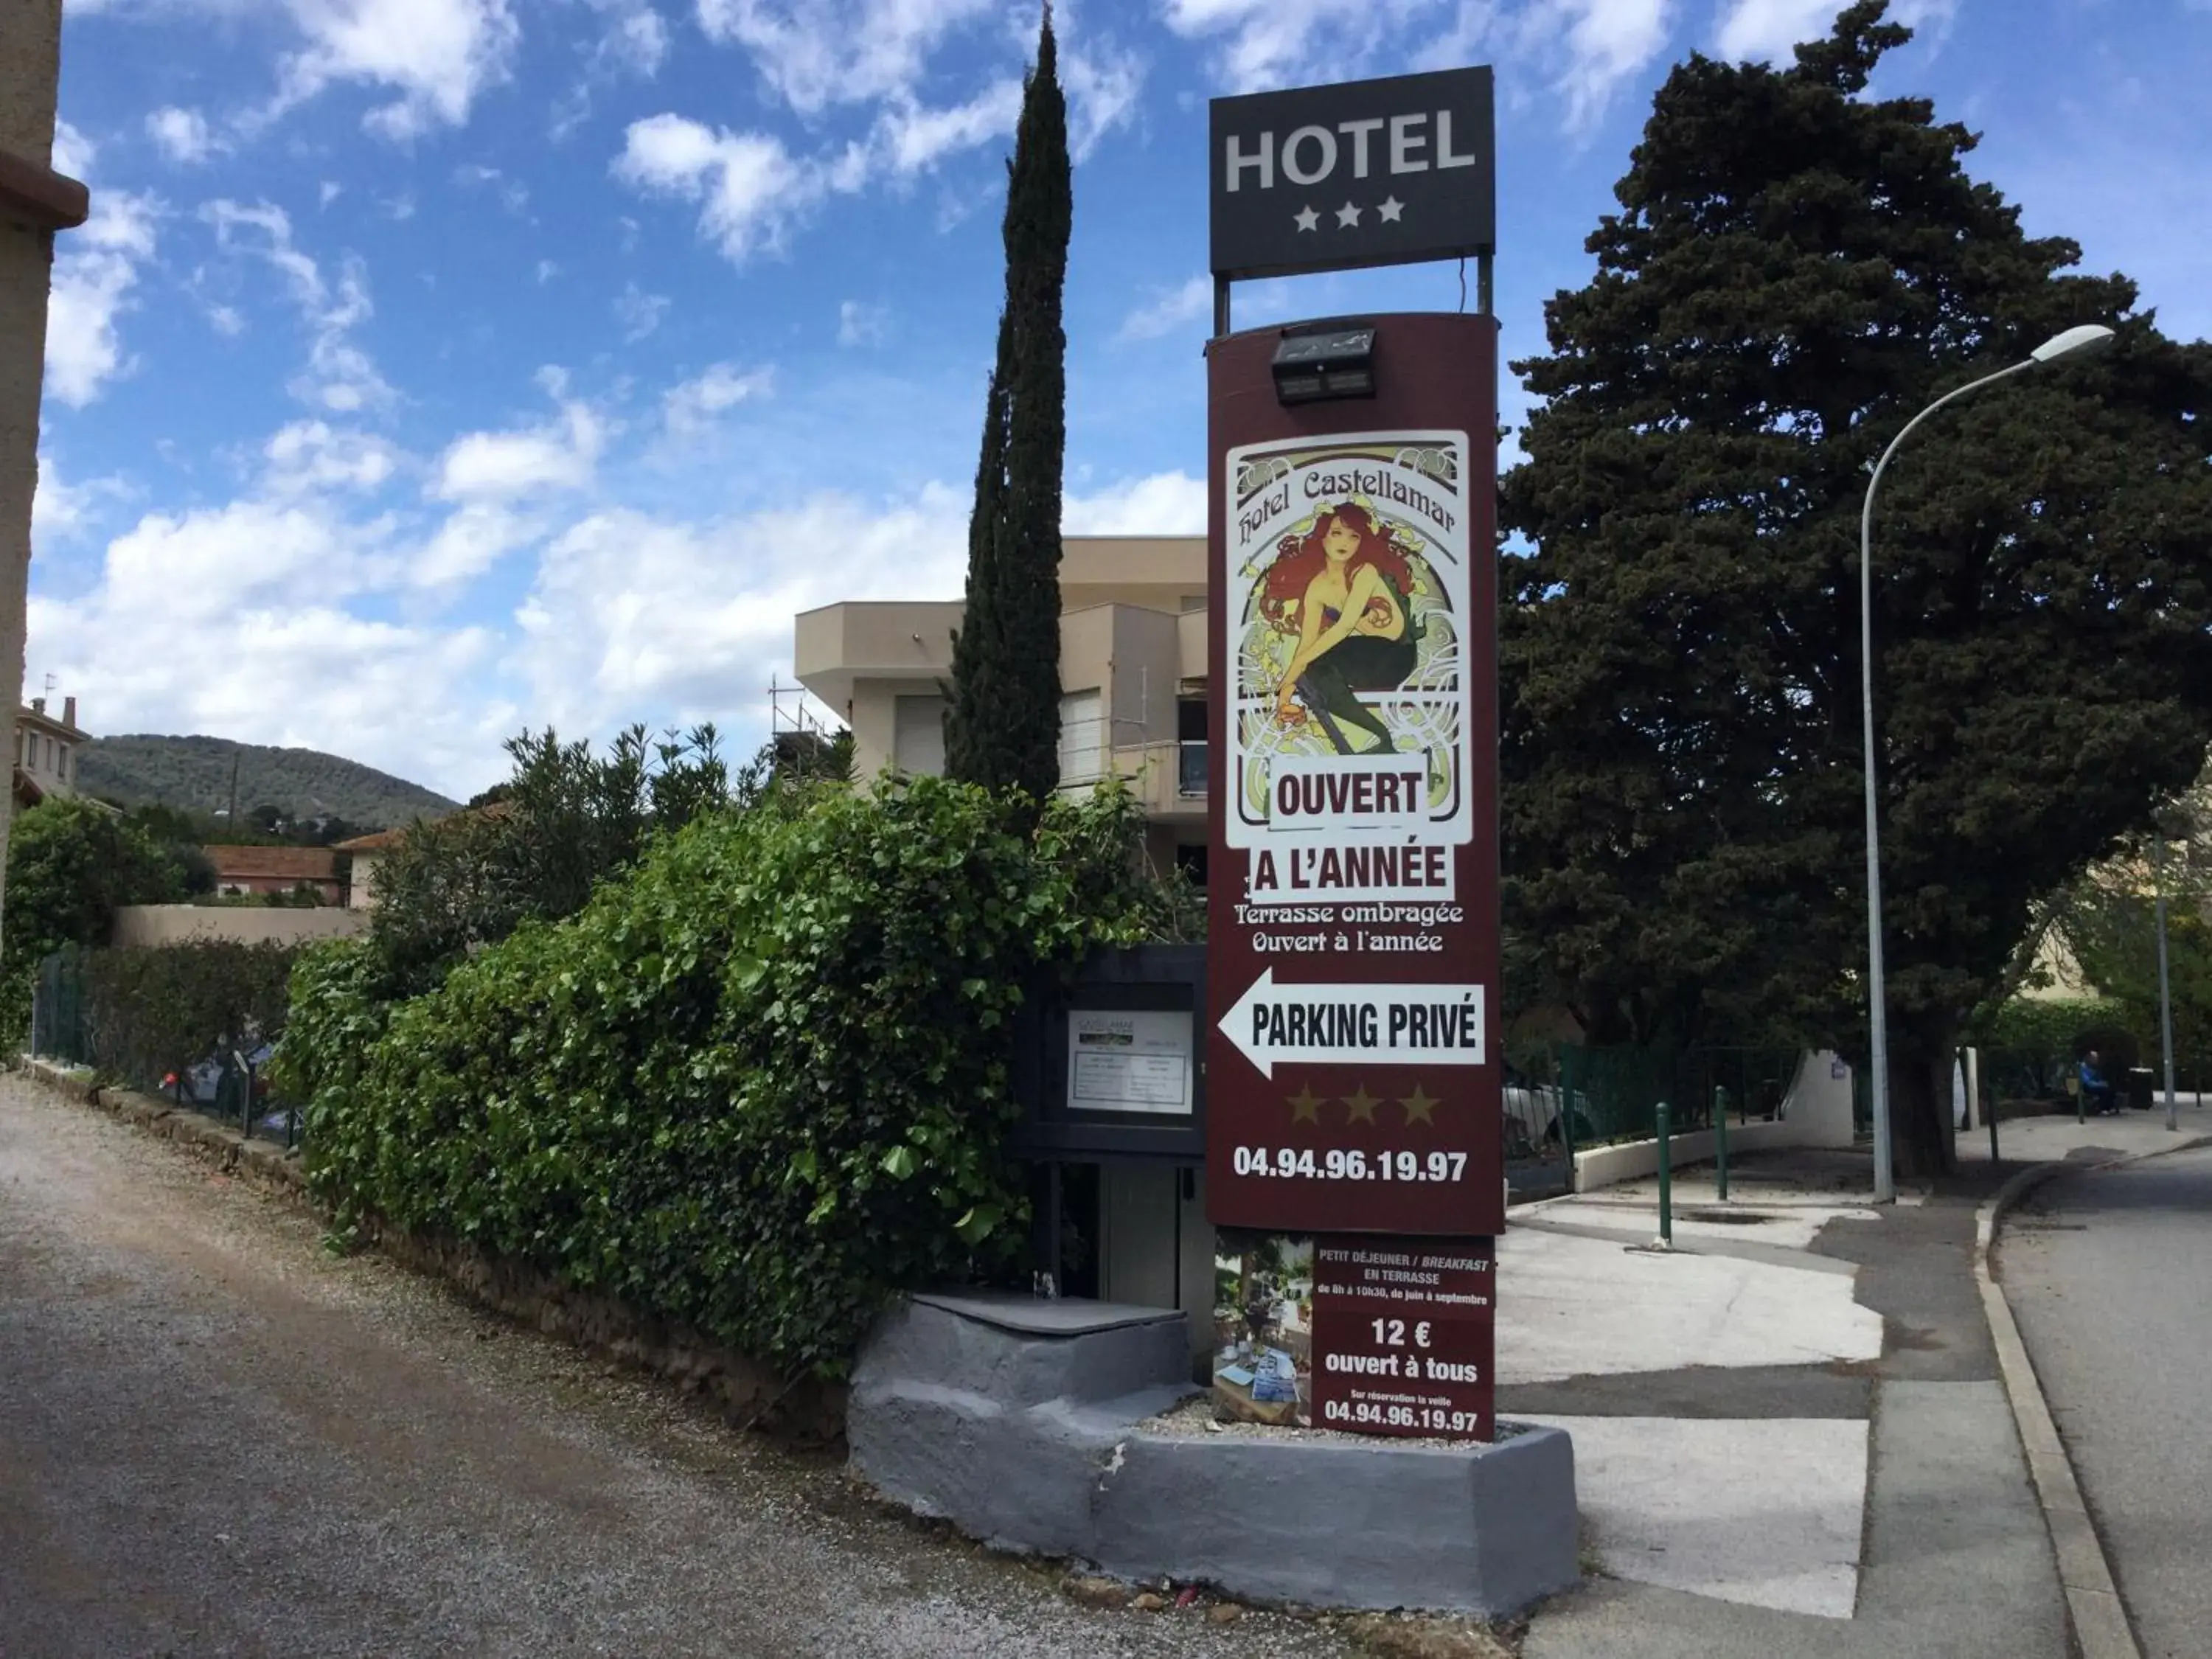 Hotel le Castellamar